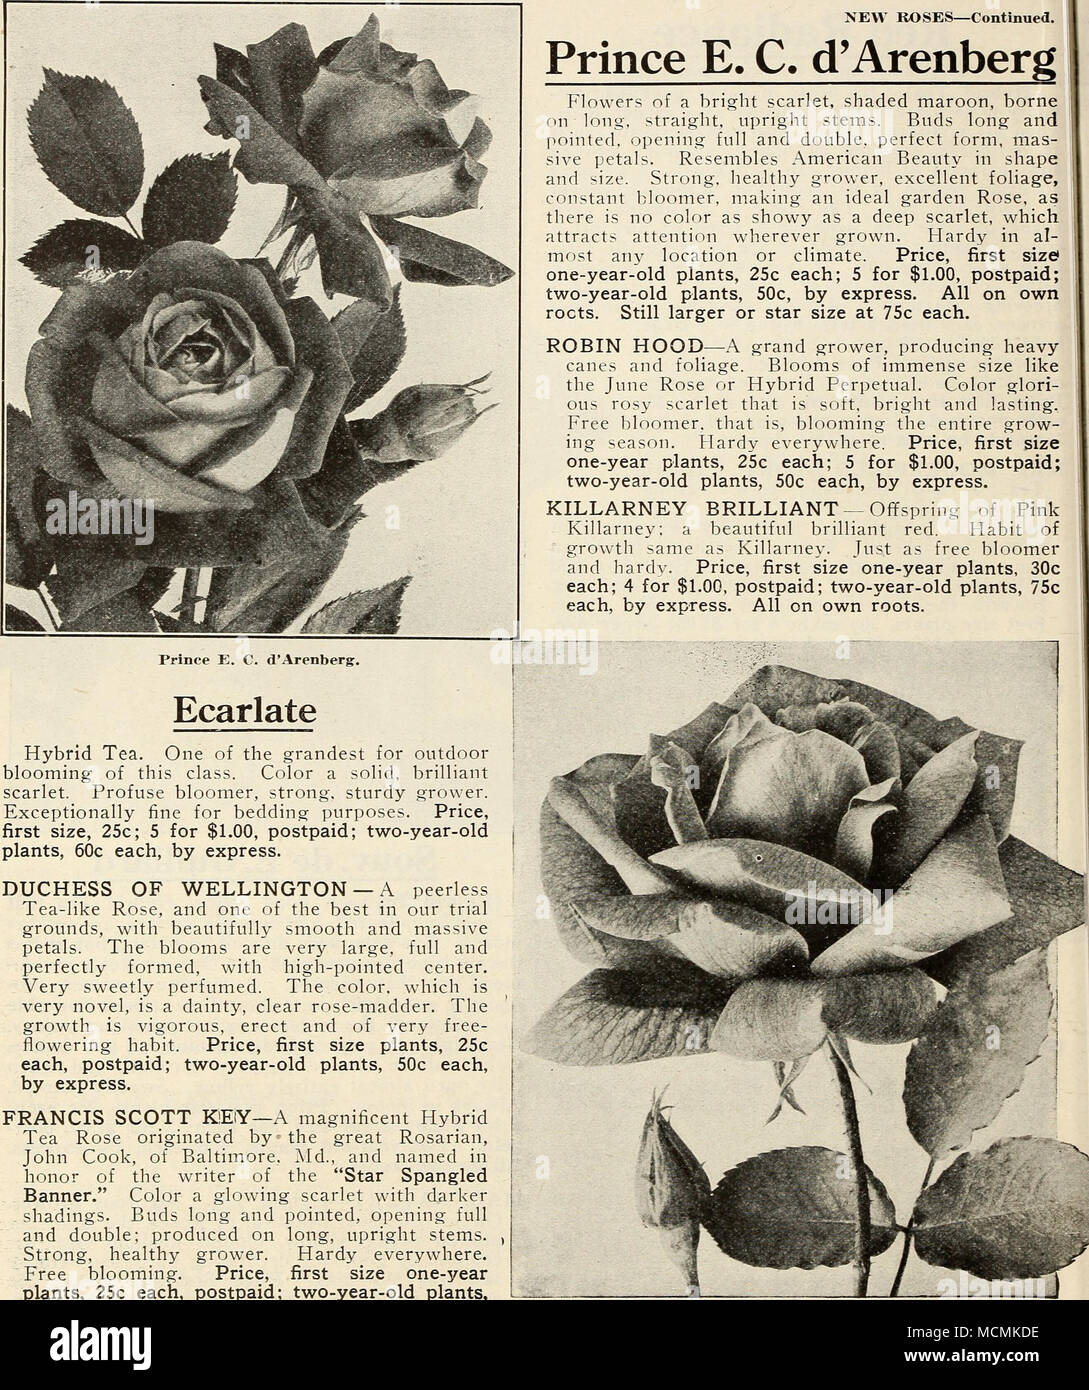 Ondata 1850 Nuova rose-continua. Il principe E. C. d'Arenberg. Ecarlate tè  ibrido. Uno dei più grandiosi per esterni di fioritura di questa classe. Il  colore di un solido, scarlatto brillante. Frondose